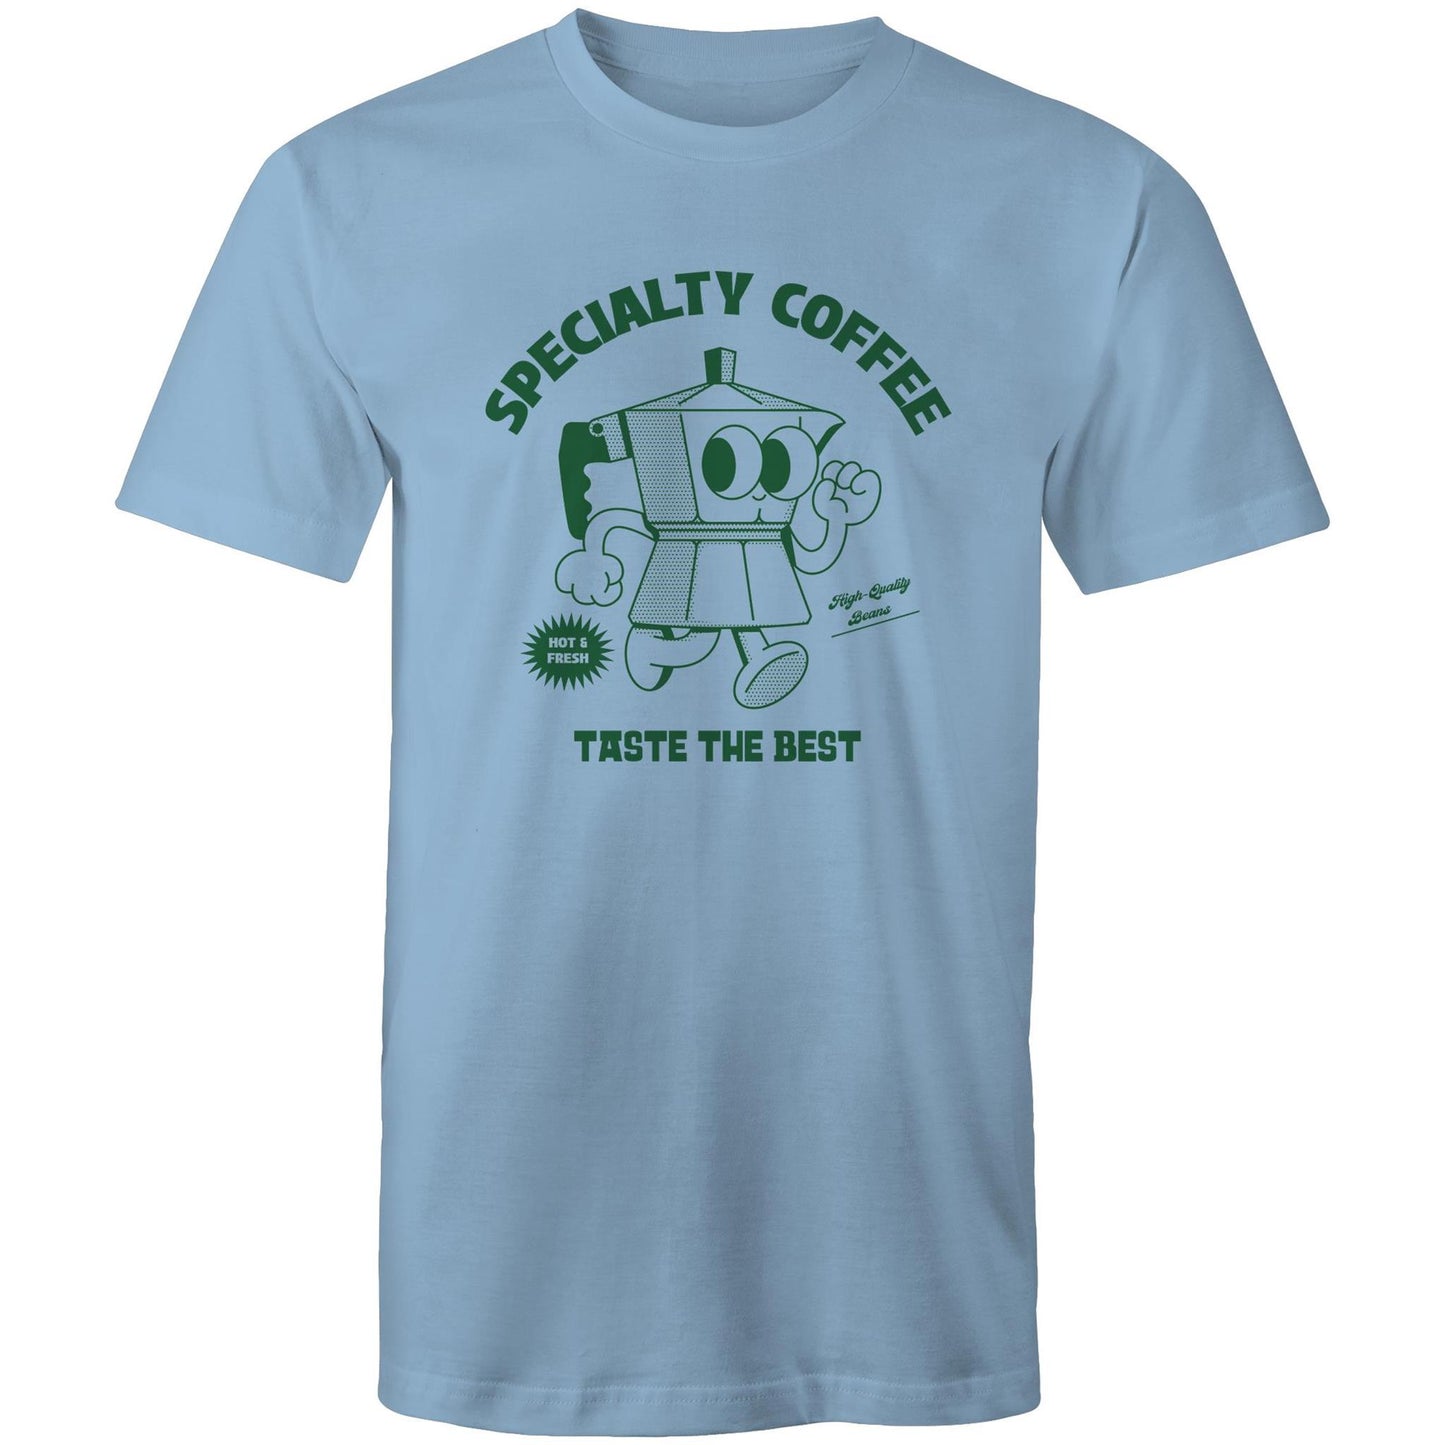 Specialty Coffee - Mens T-Shirt Carolina Blue Mens T-shirt Coffee Retro